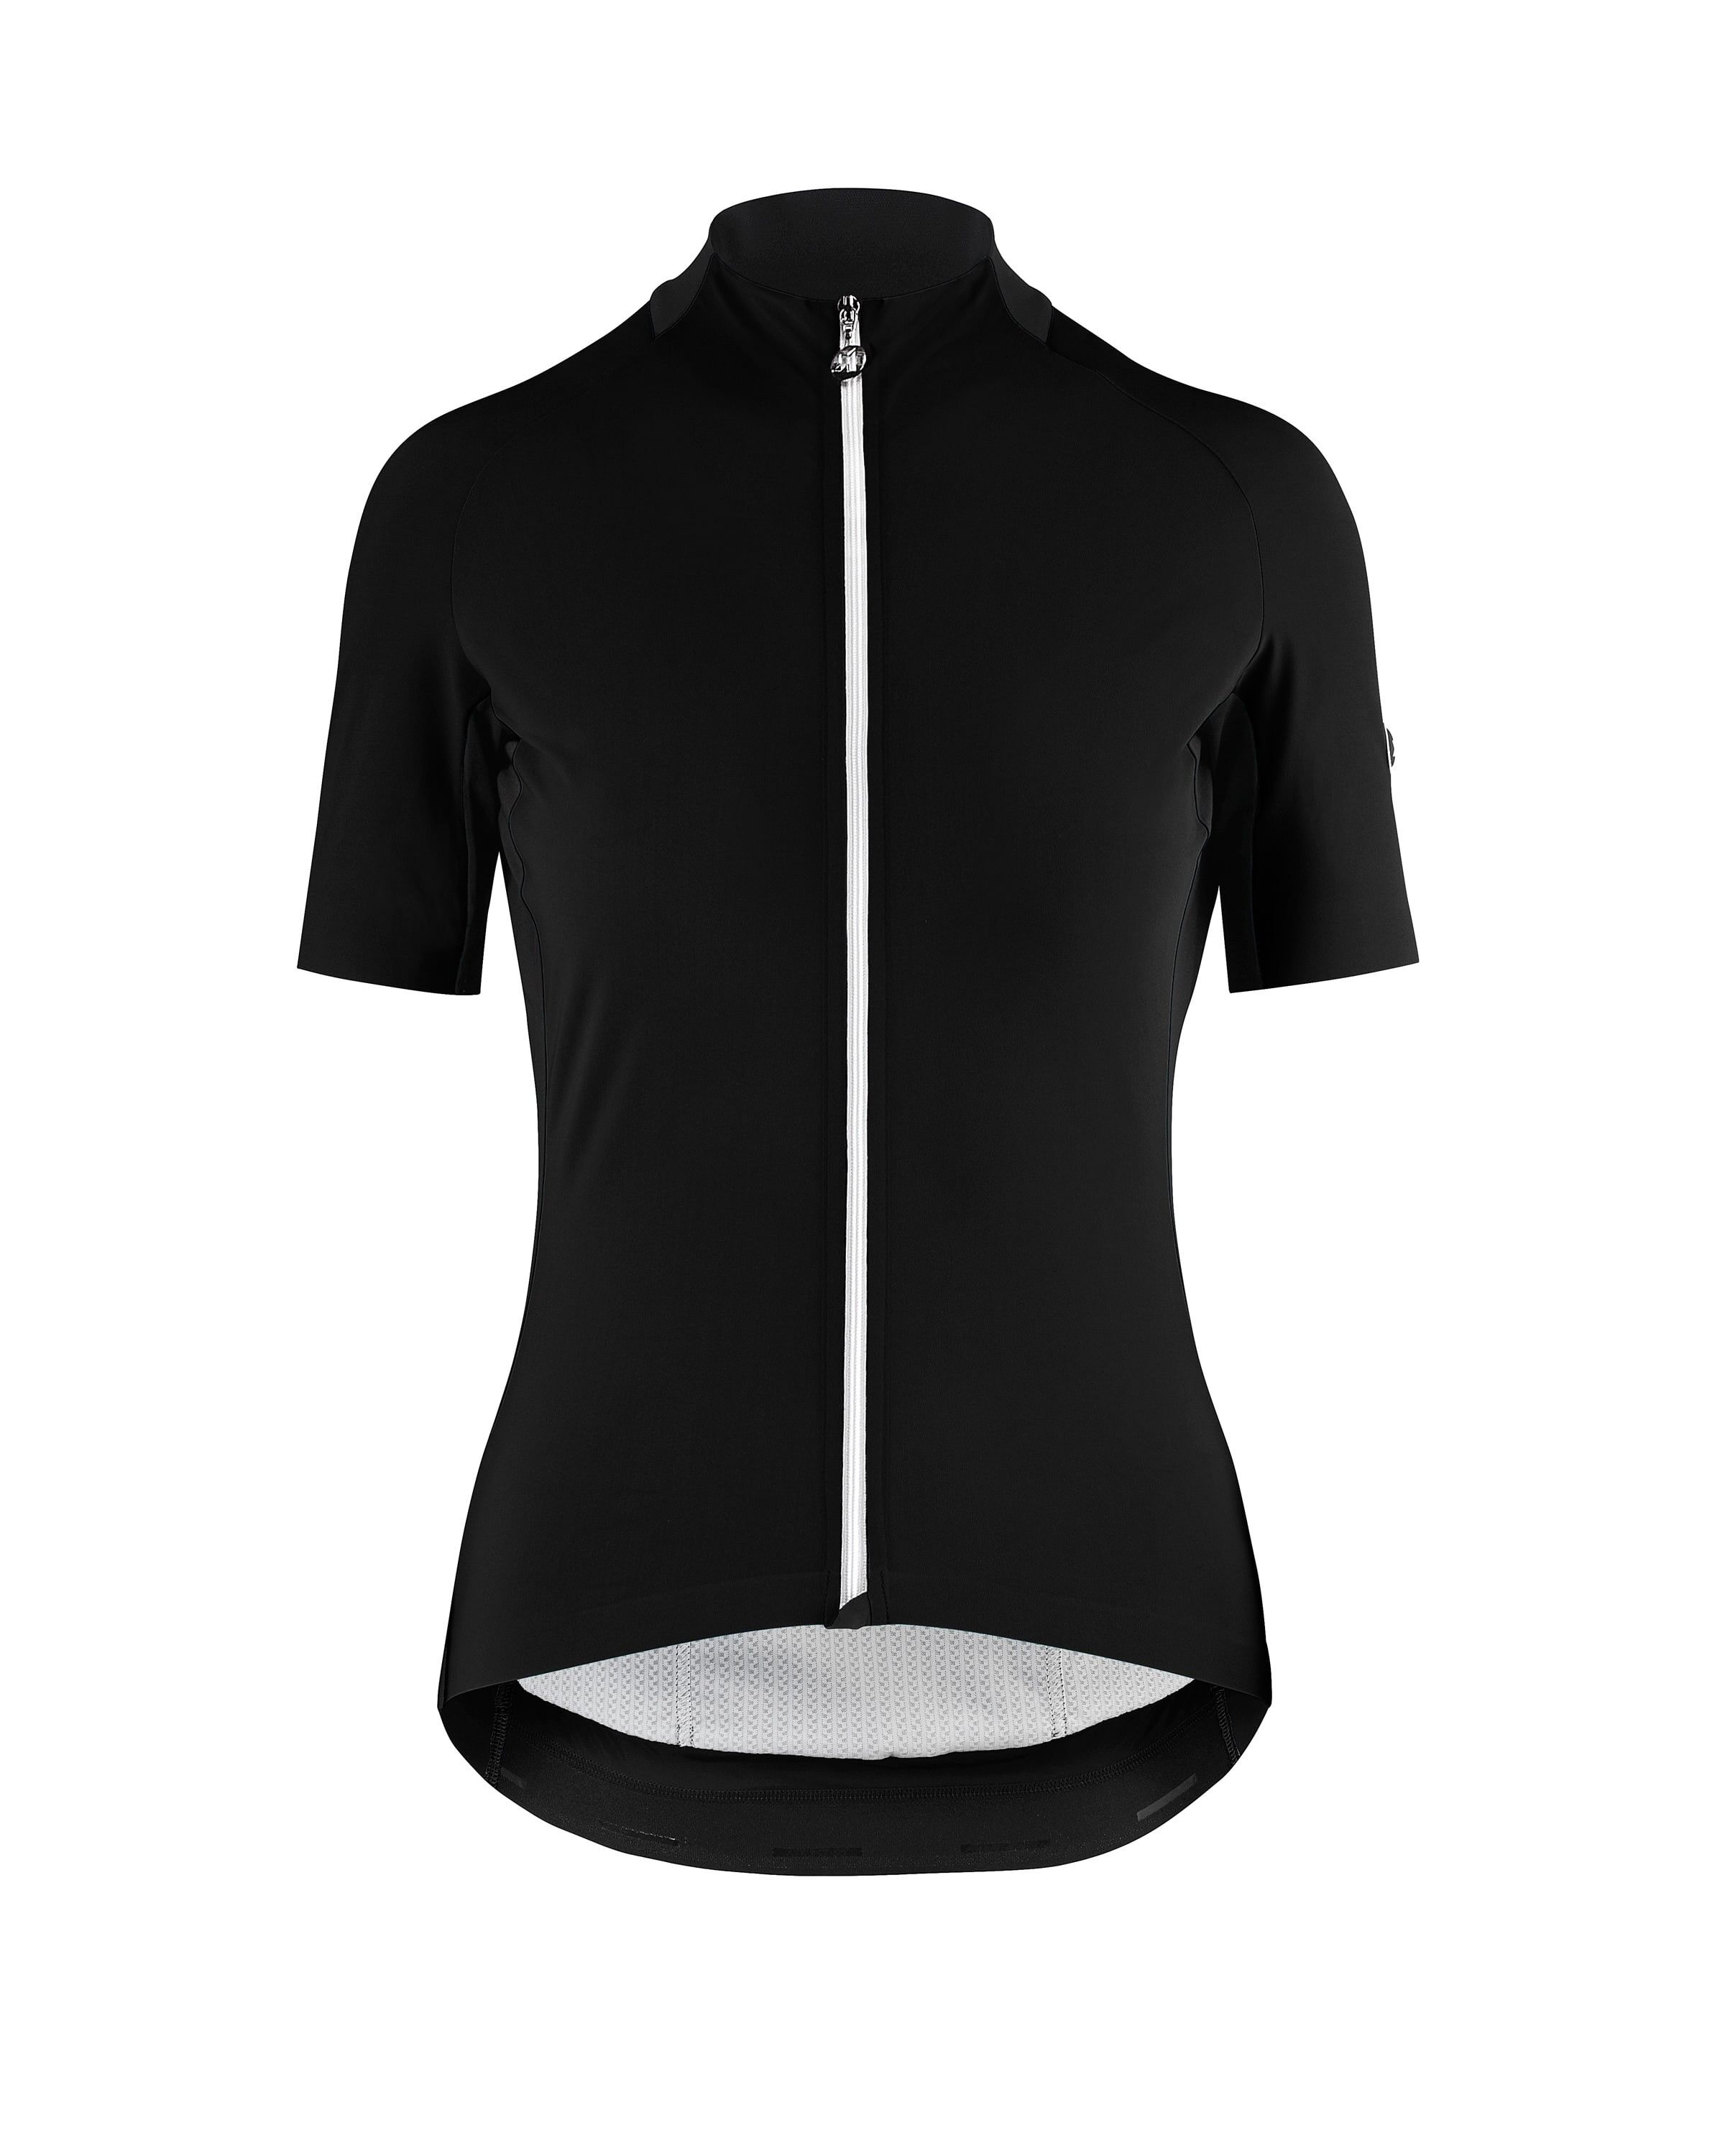 Assos SS JerseyLaalalai Evo - Cycling jersey - Women's